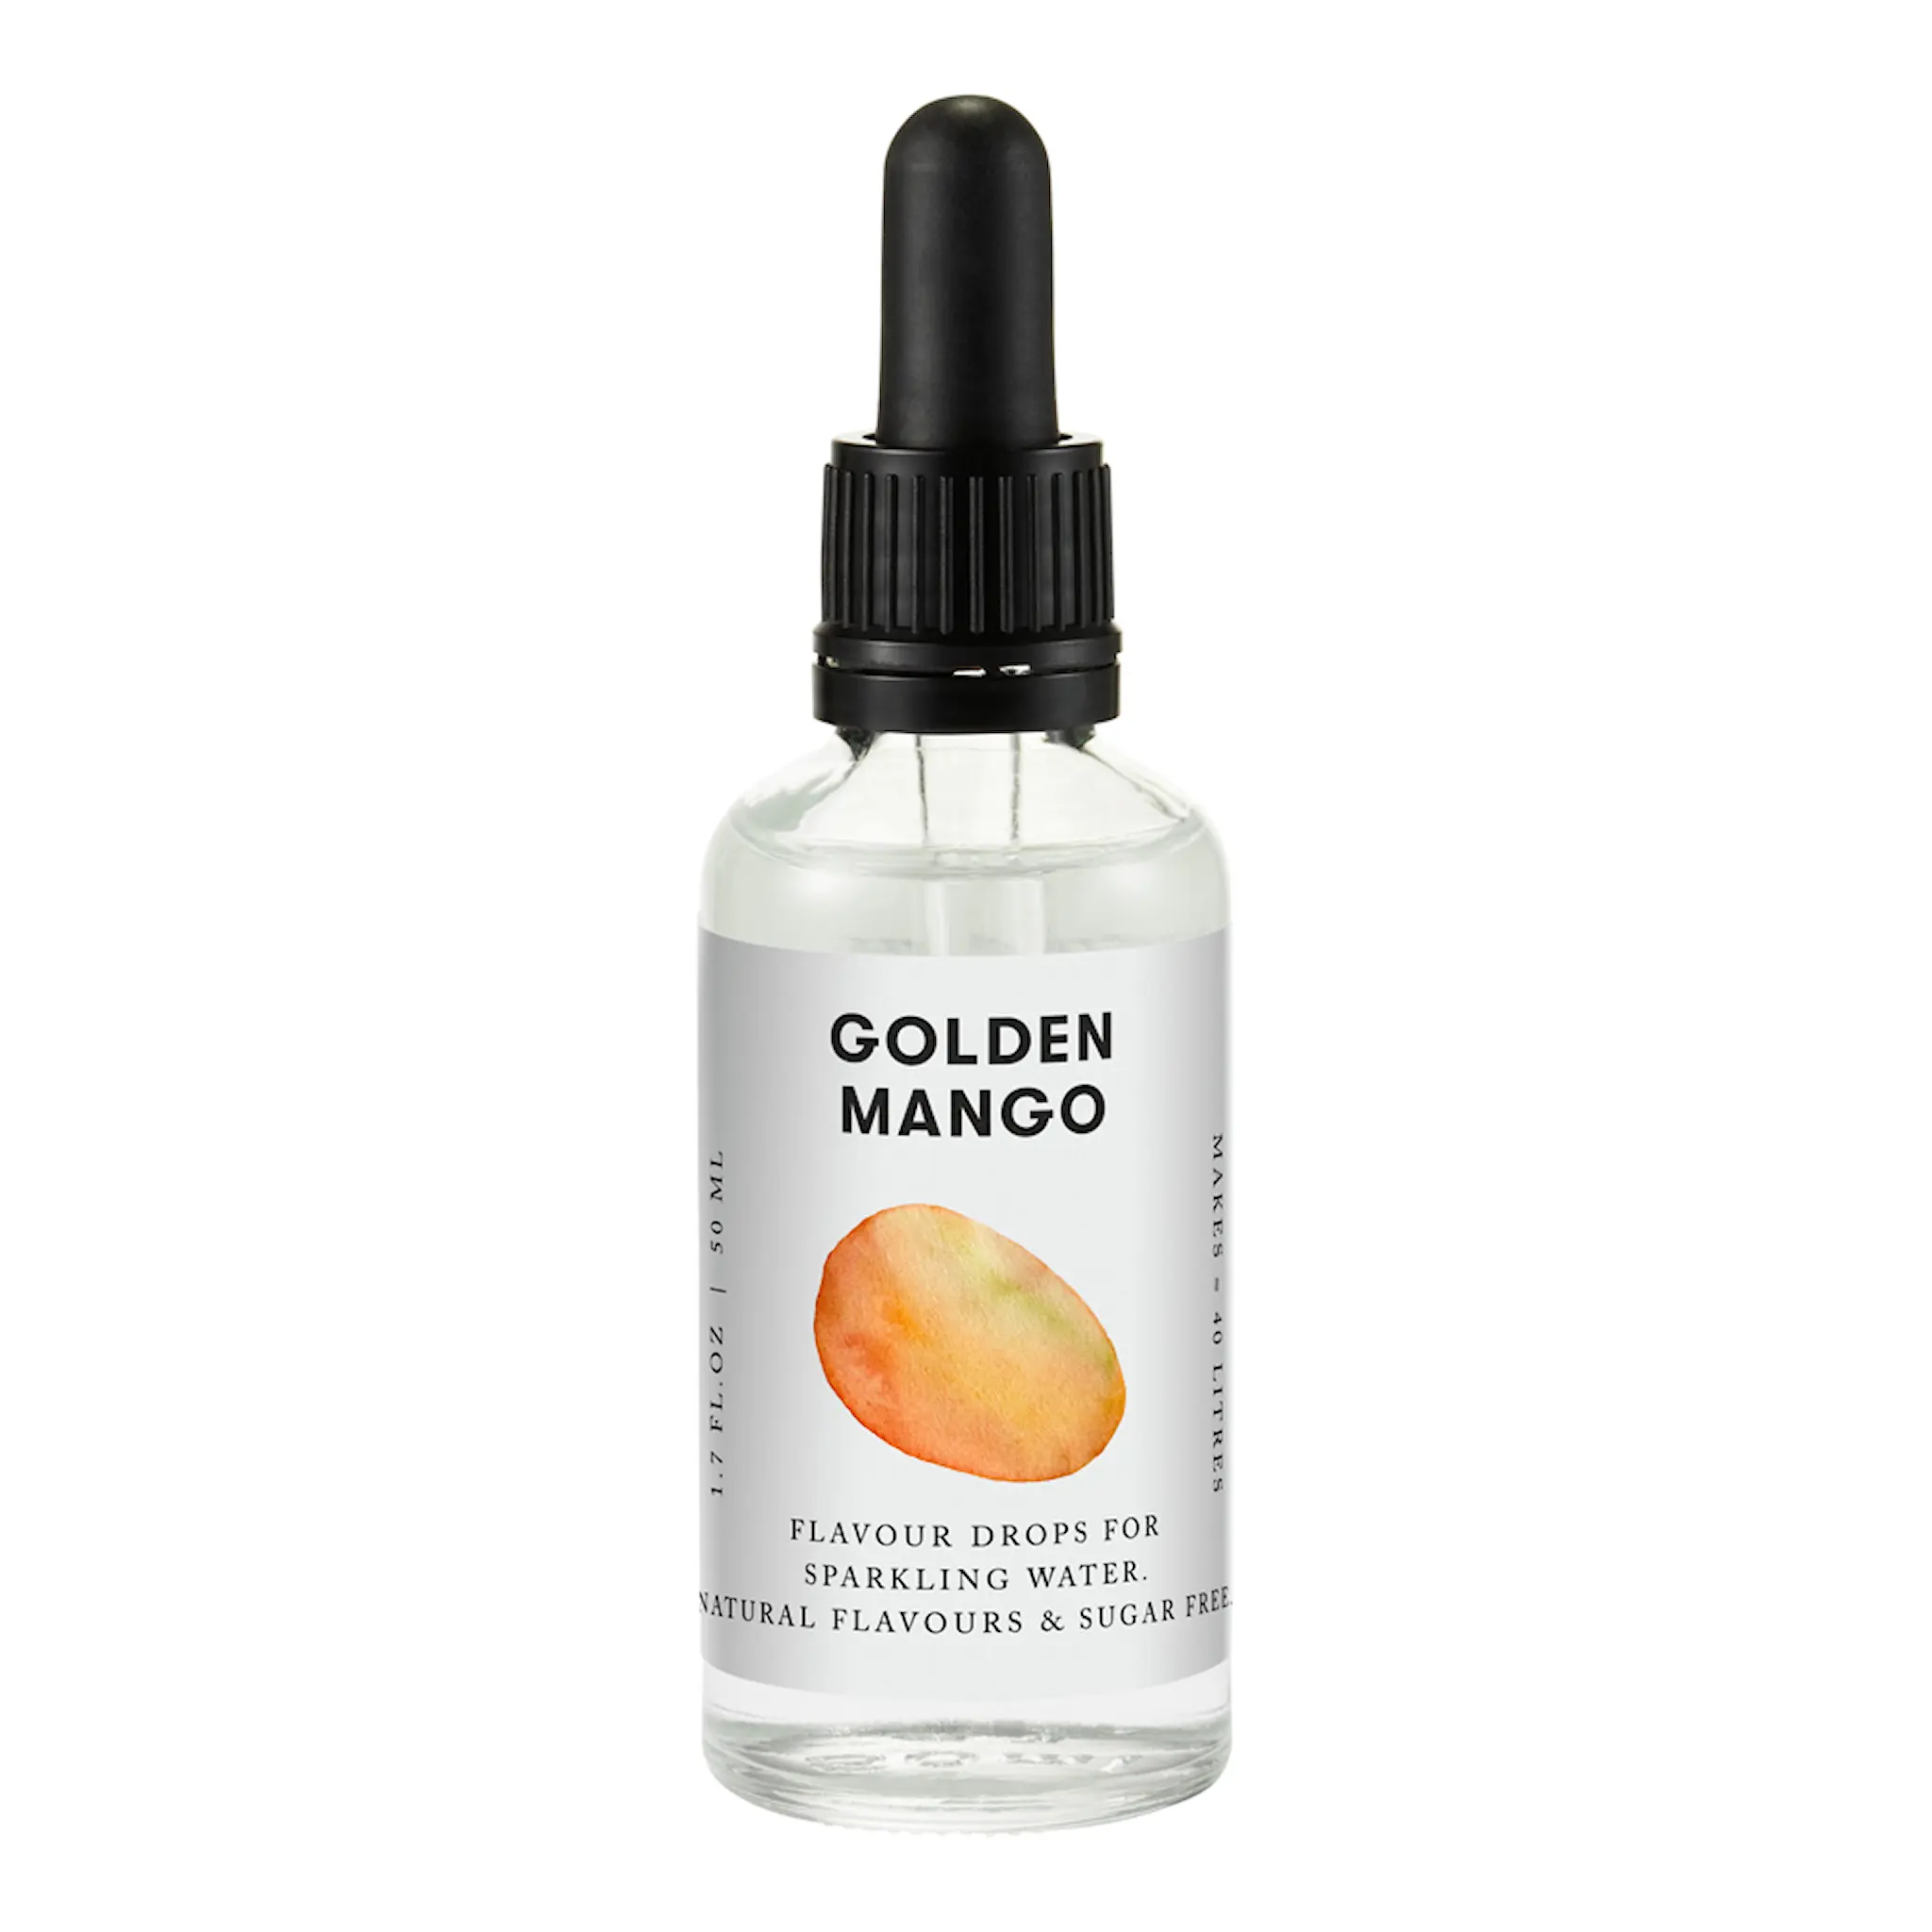 Aarke Flavour drops 50 ml golden mango